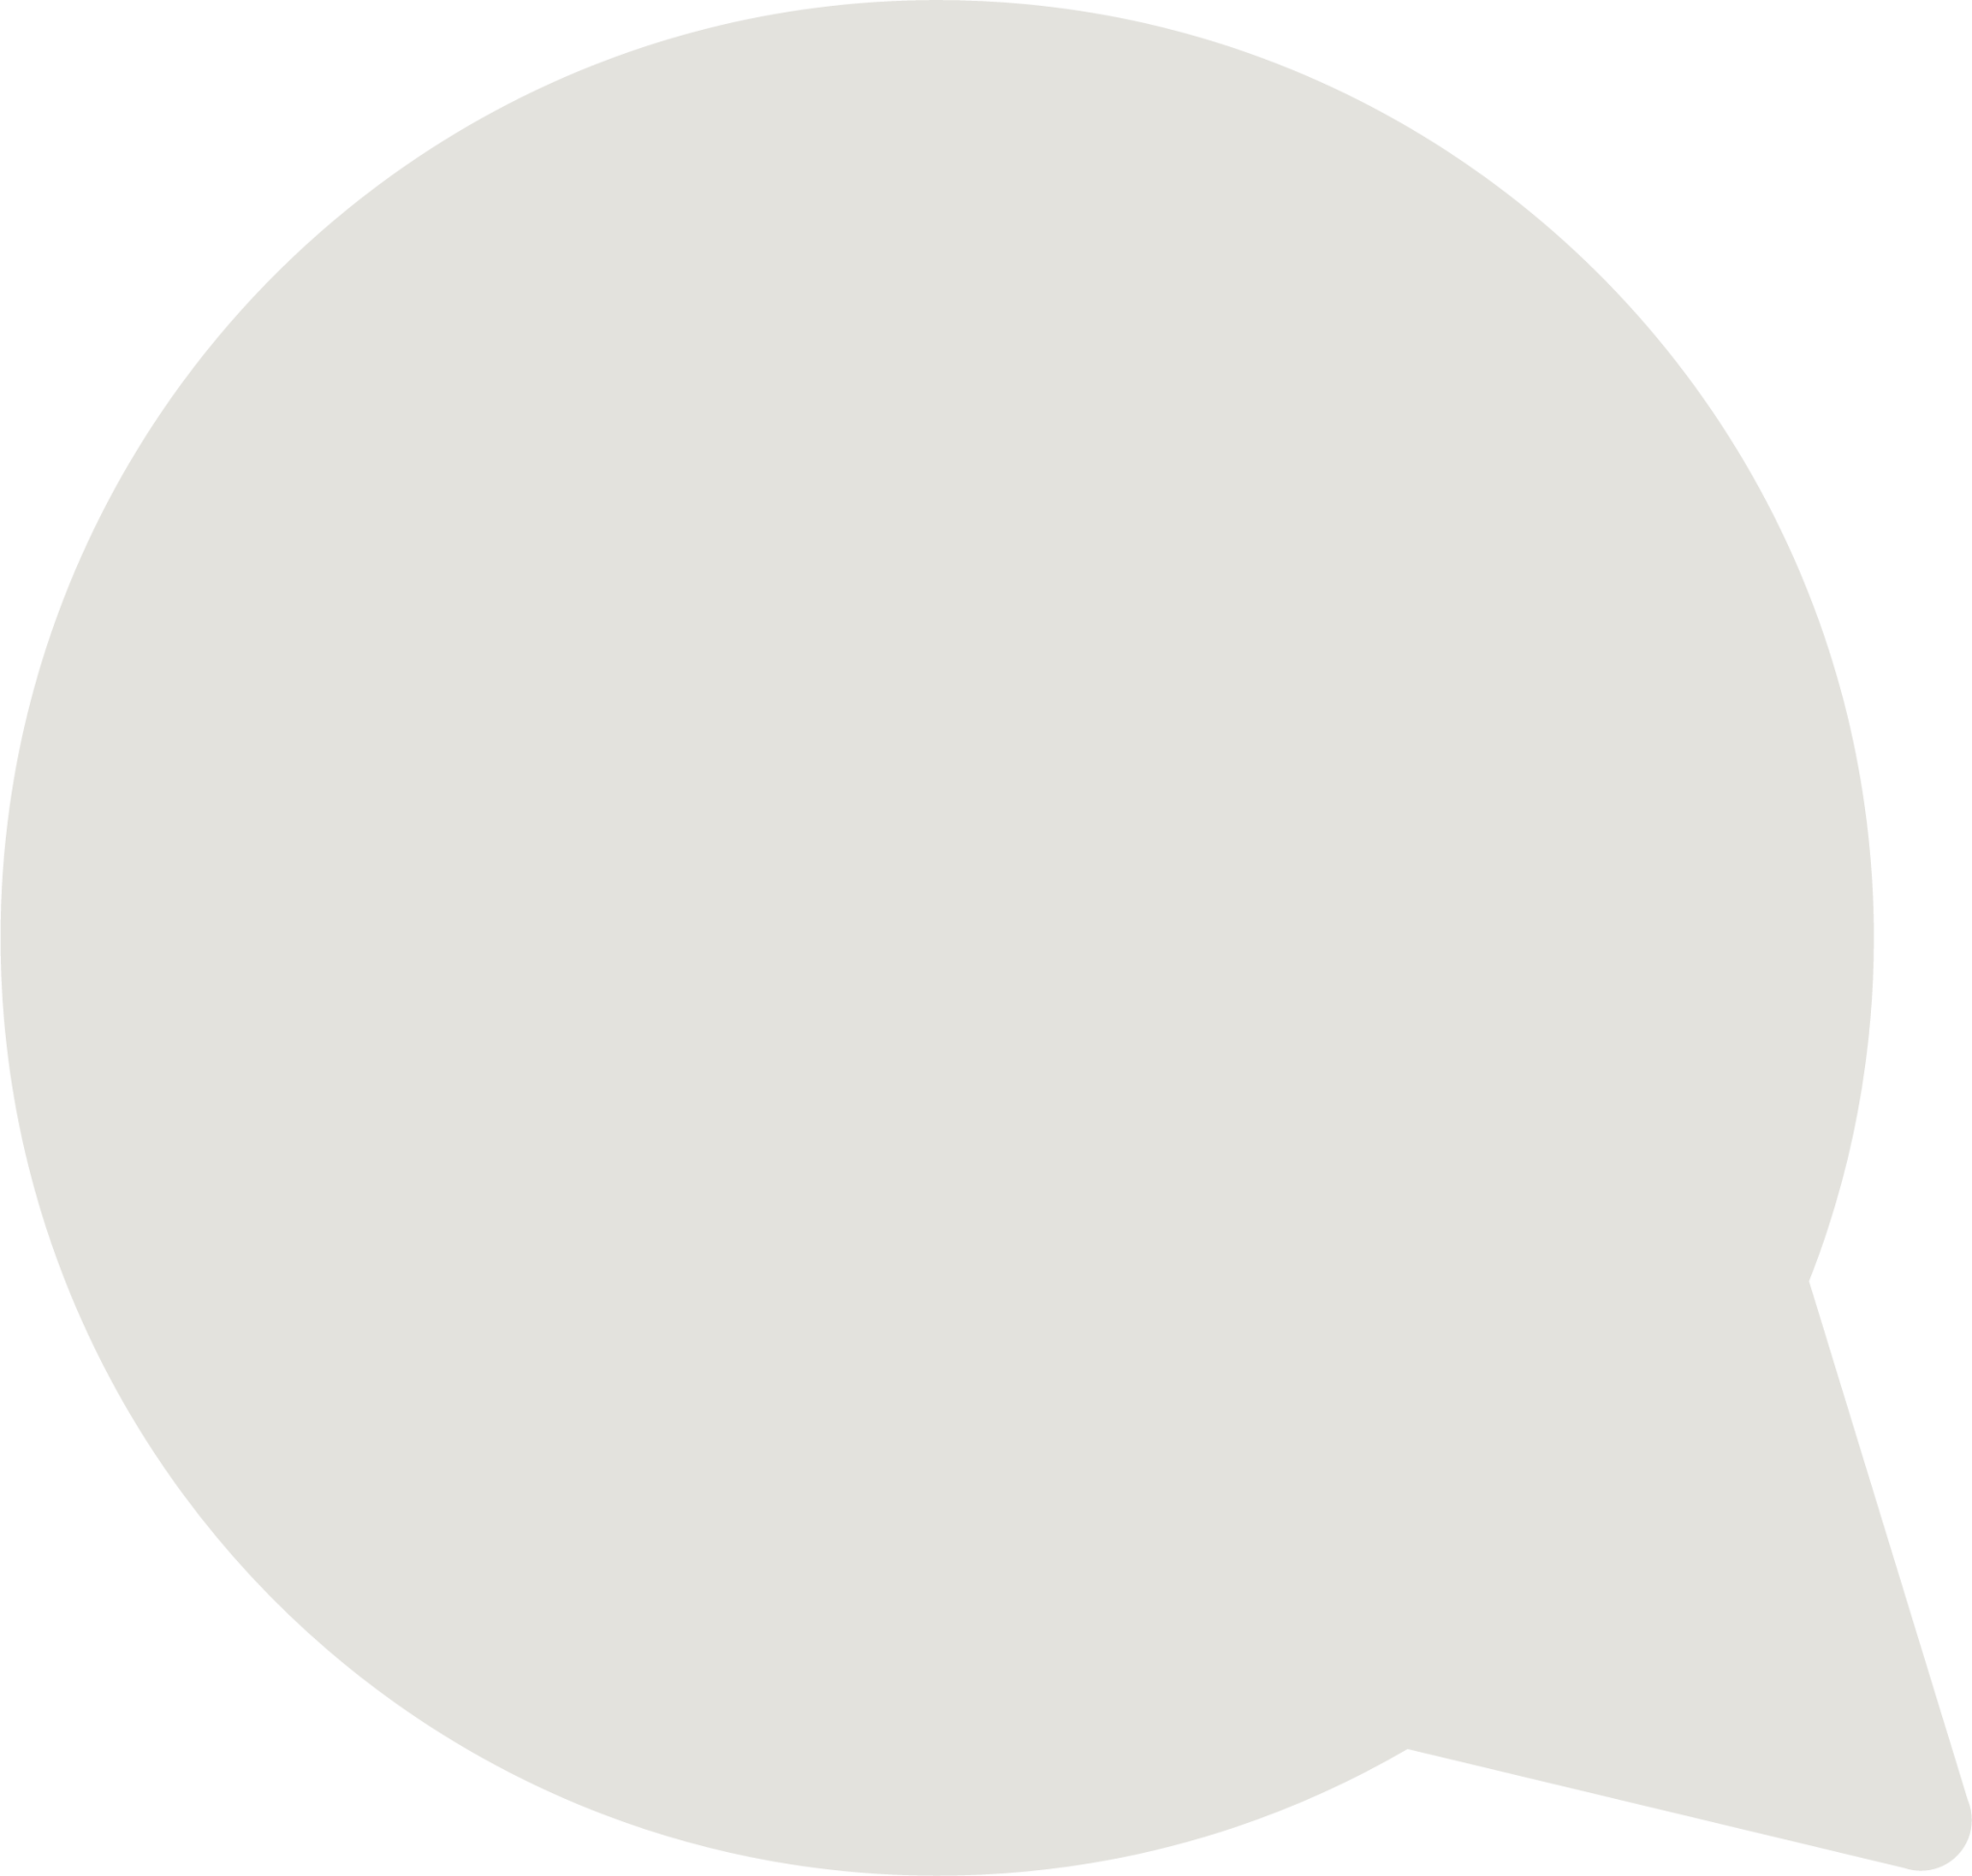 left speech bubble emoji